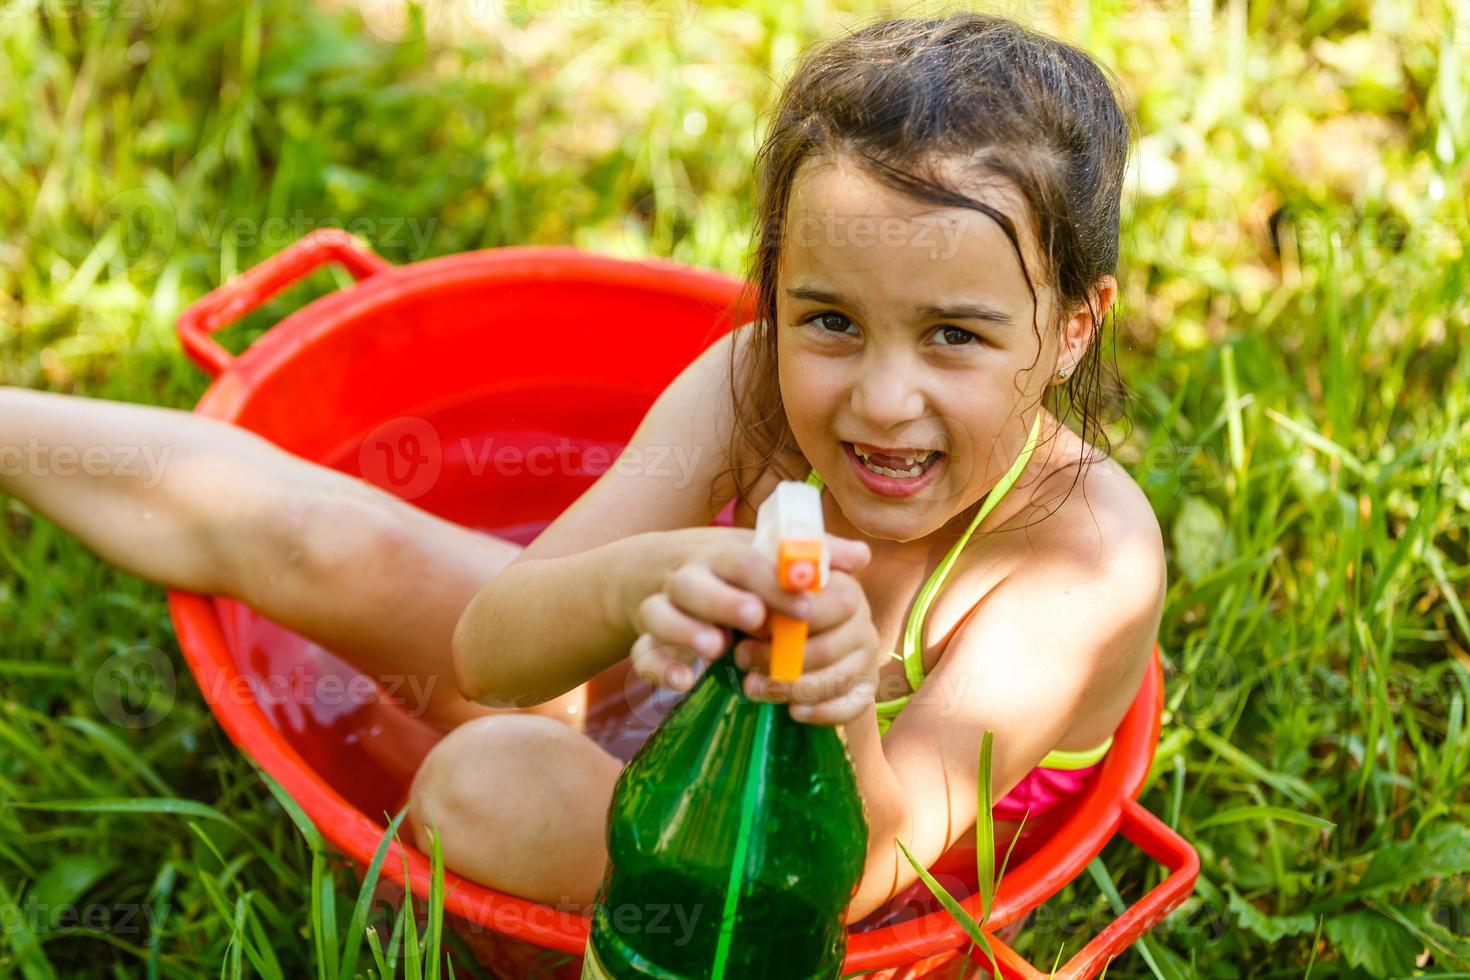 développement de l'enfant en harmonie avec la nature. petite belle fille s'amusant avec de l'eau et prenant un bain à l'extérieur sur l'herbe dans un bol à vaisselle vintage hygiène, enfance heureuse, concept nature photo